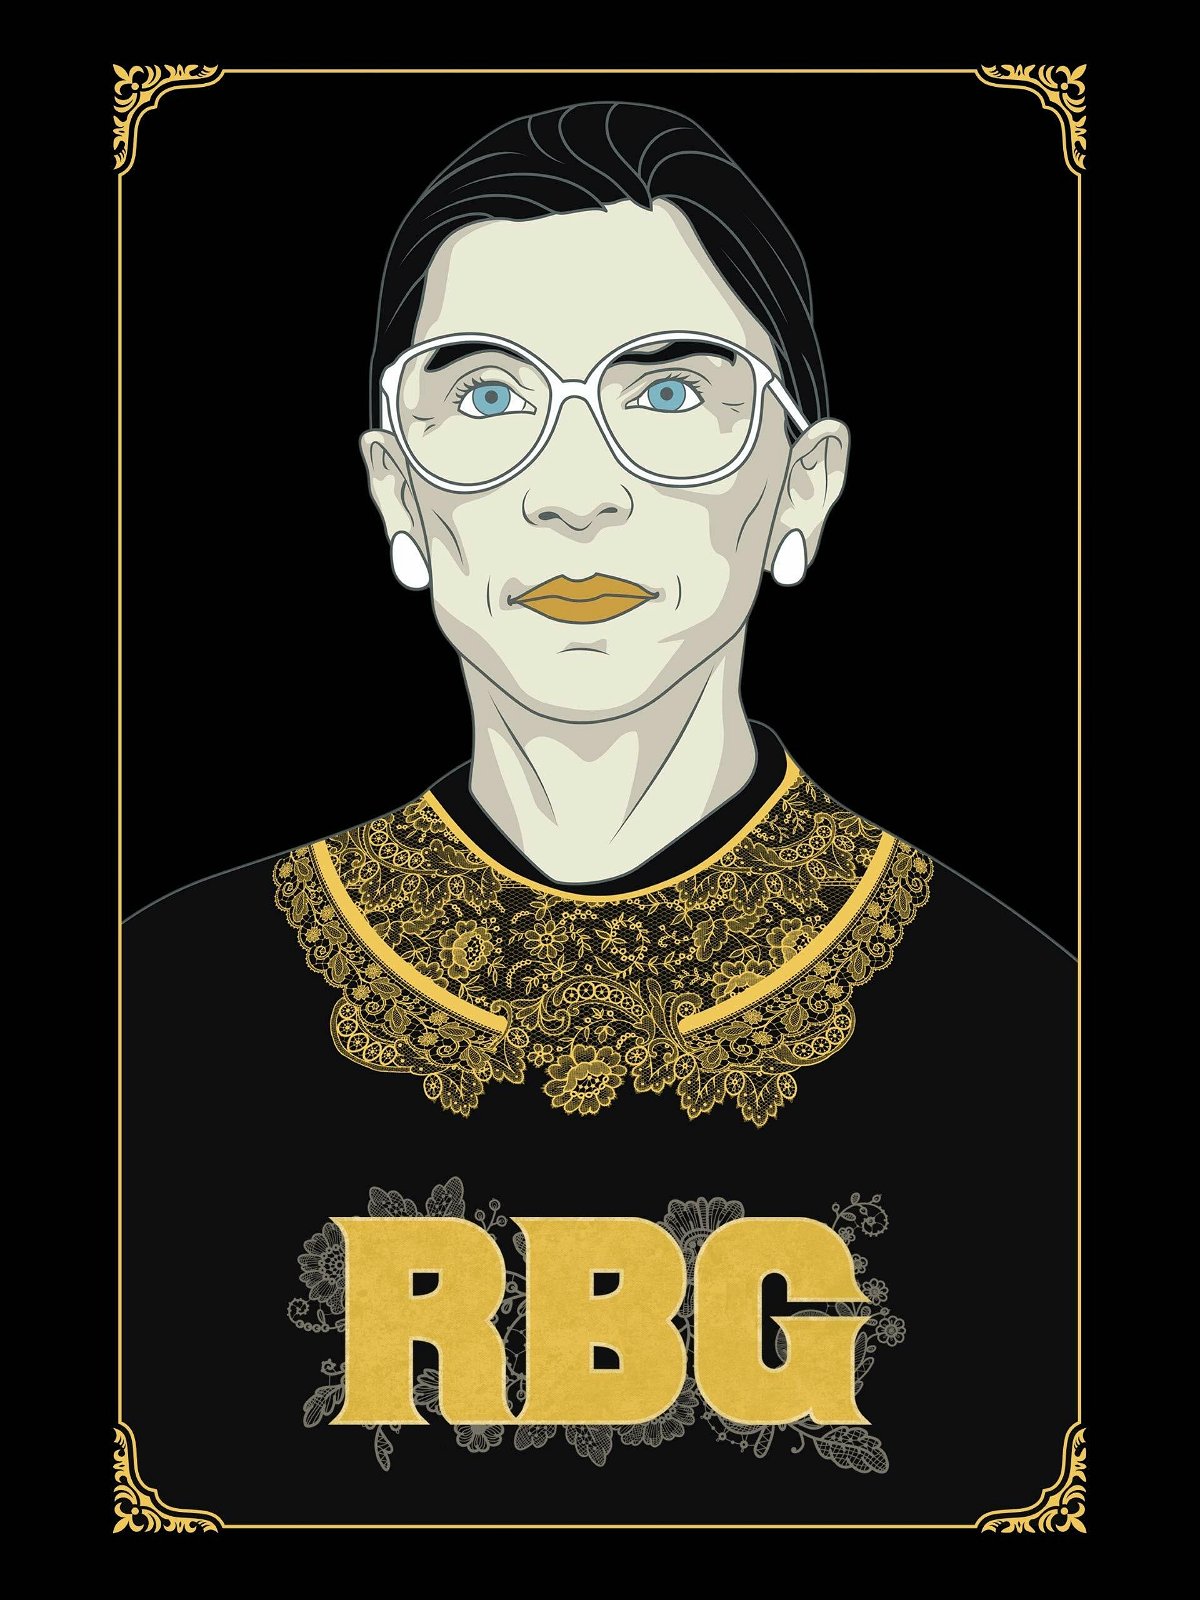 Il poster di Alla corte di Ruth - RBG